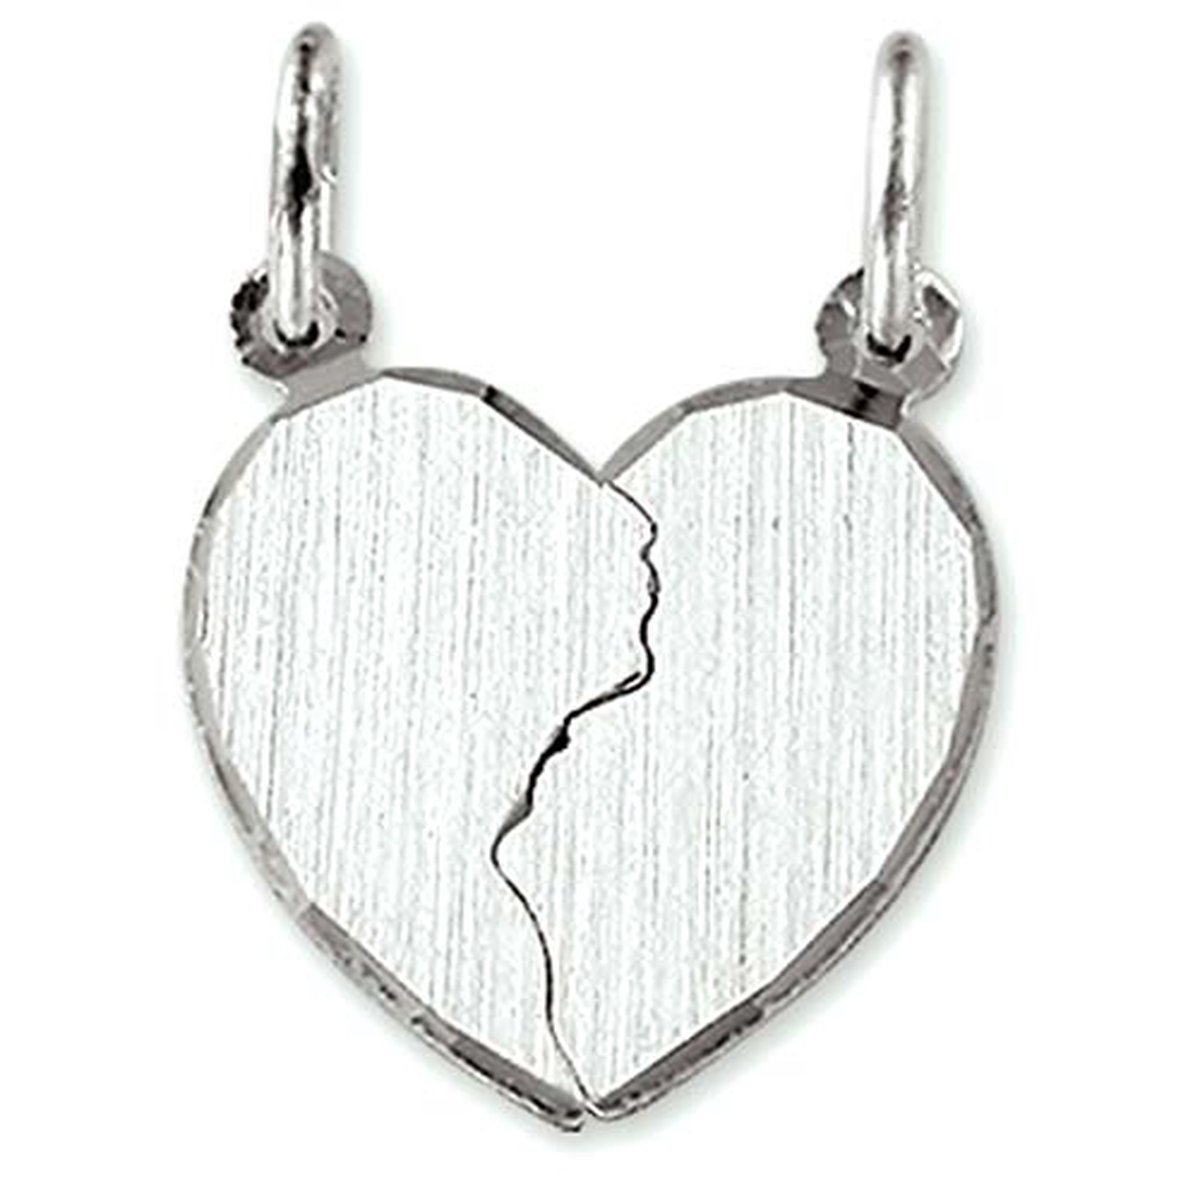 Vriendschapshartje® Breekhartje zilver mat gediamanteerd - hart hanger - gepersonaliseerd breekhart - inclusief graveren